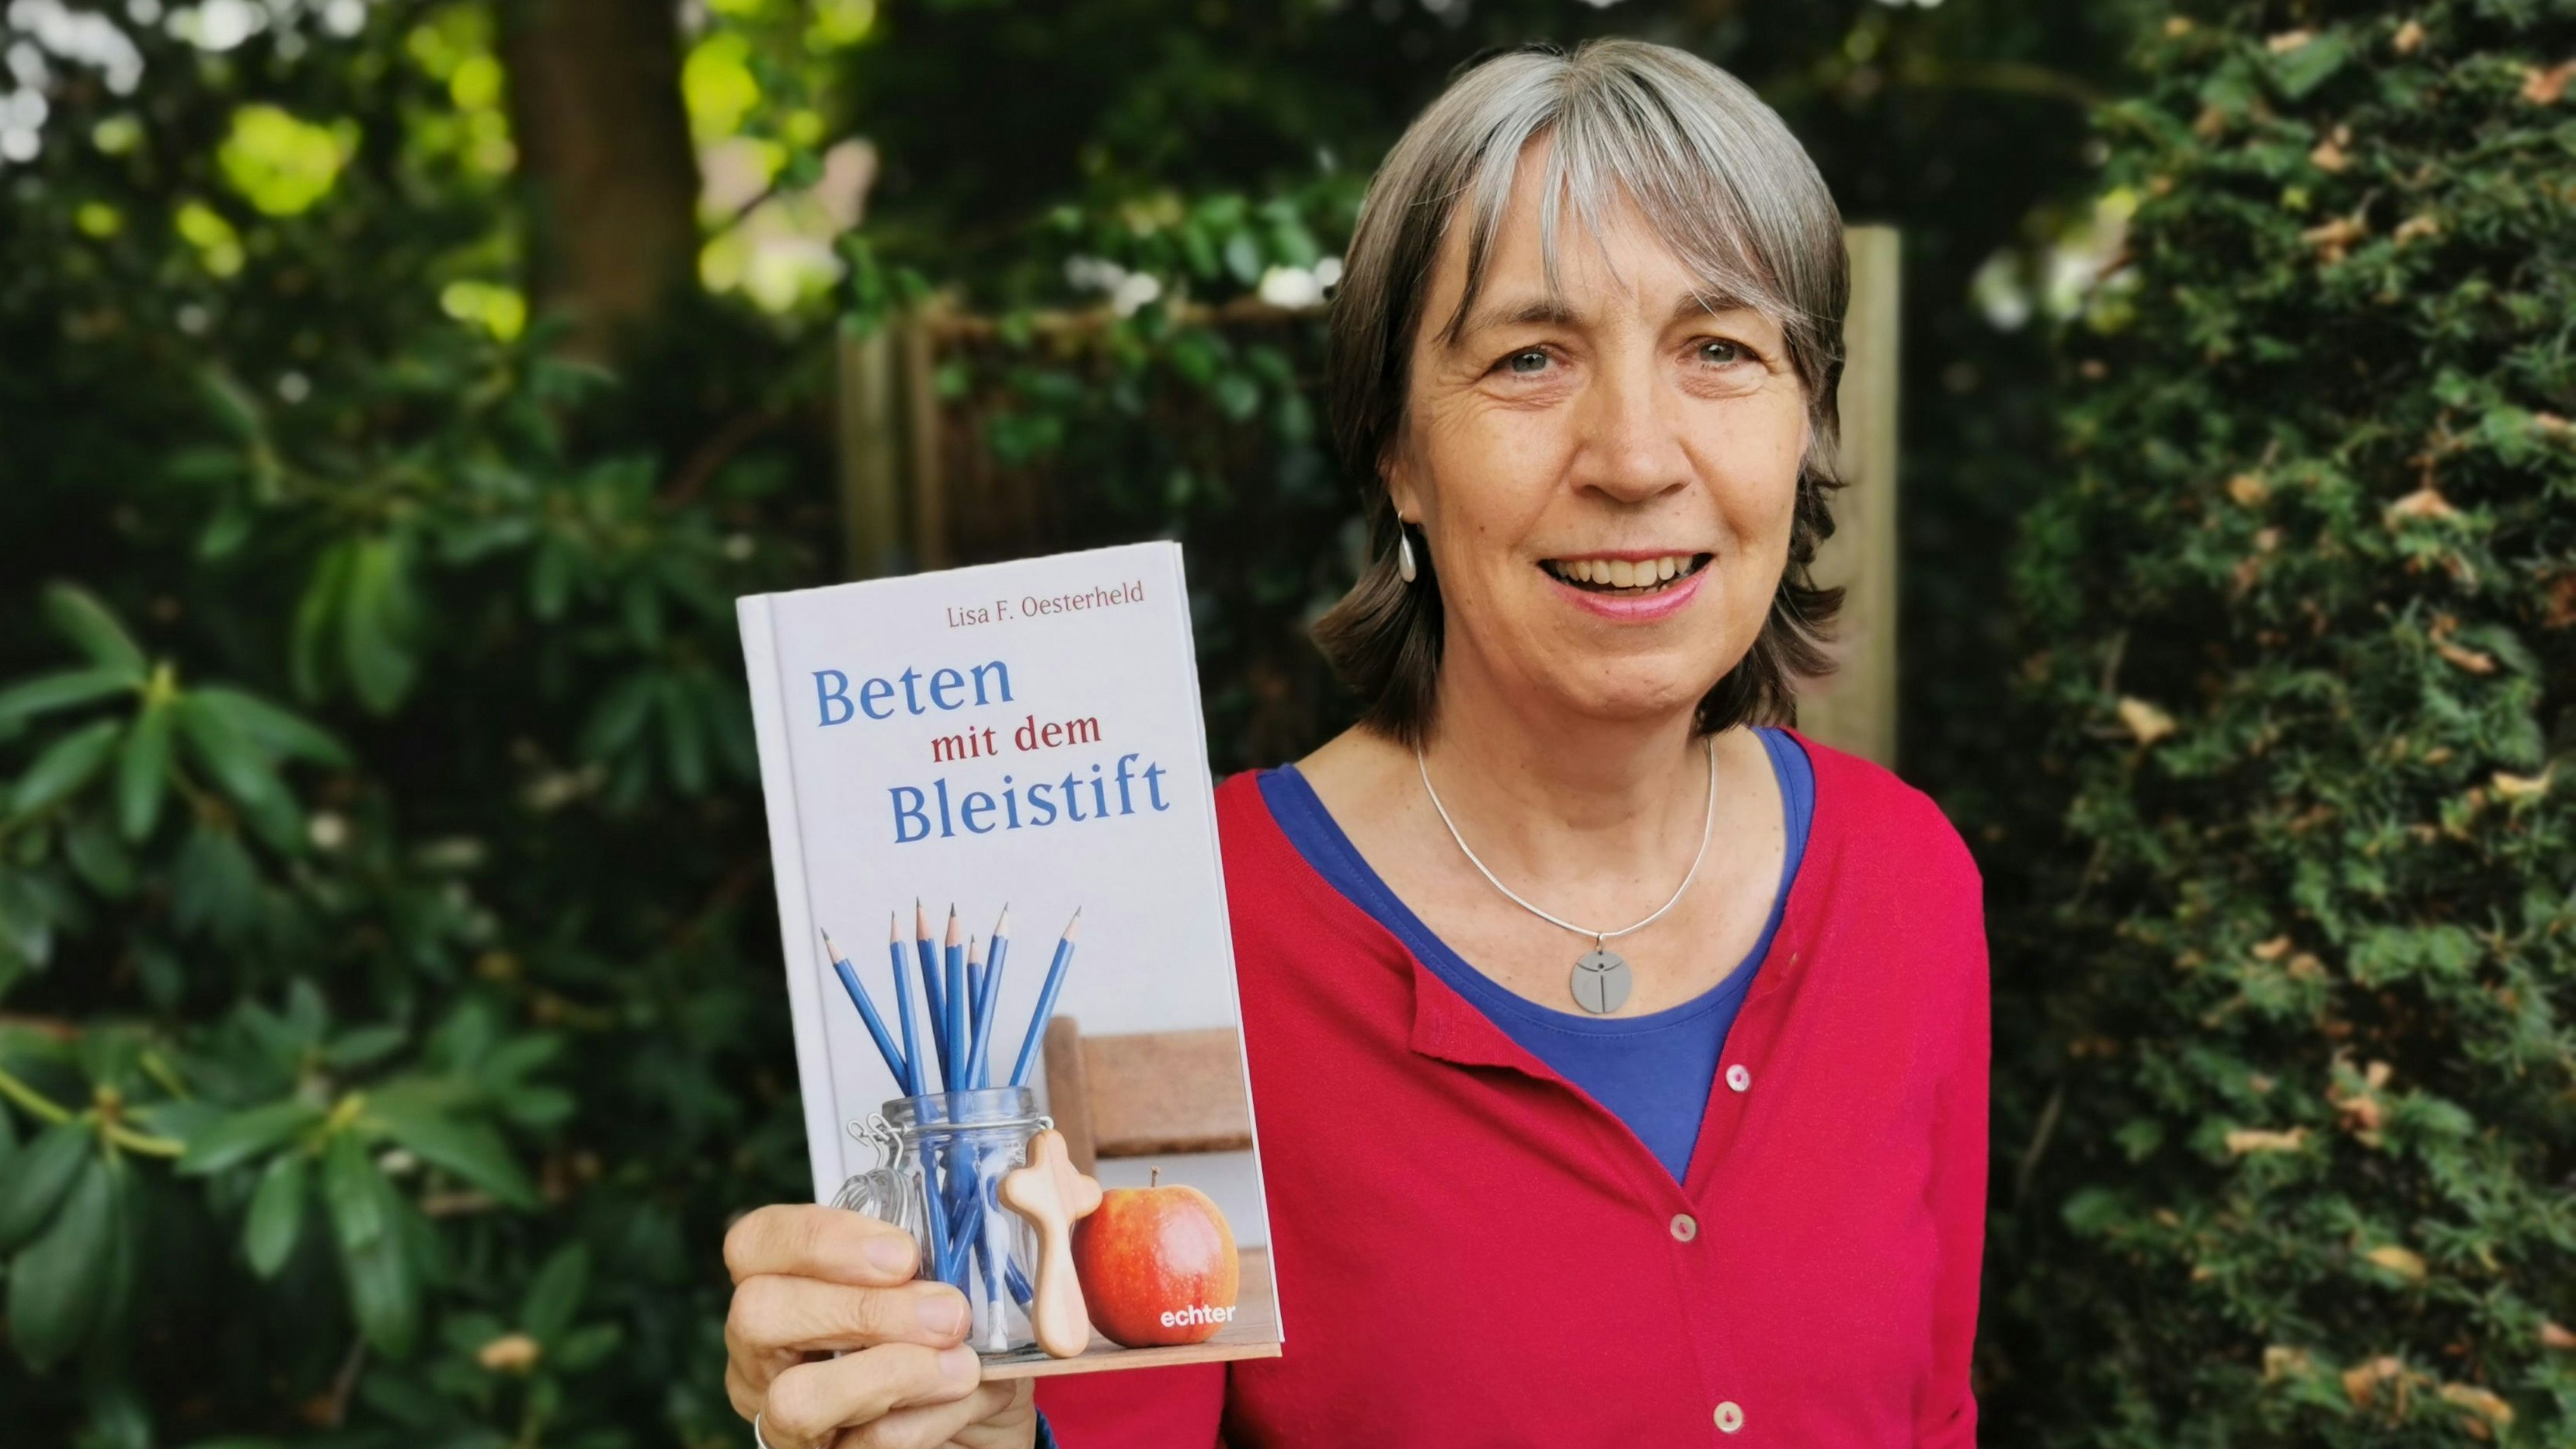 Gerade erschienen: Autorin Lisa F. Oesterheld präsentiert ihr neues Buch "Beten mit dem Bleistift".&nbsp; Foto: Seelhorst